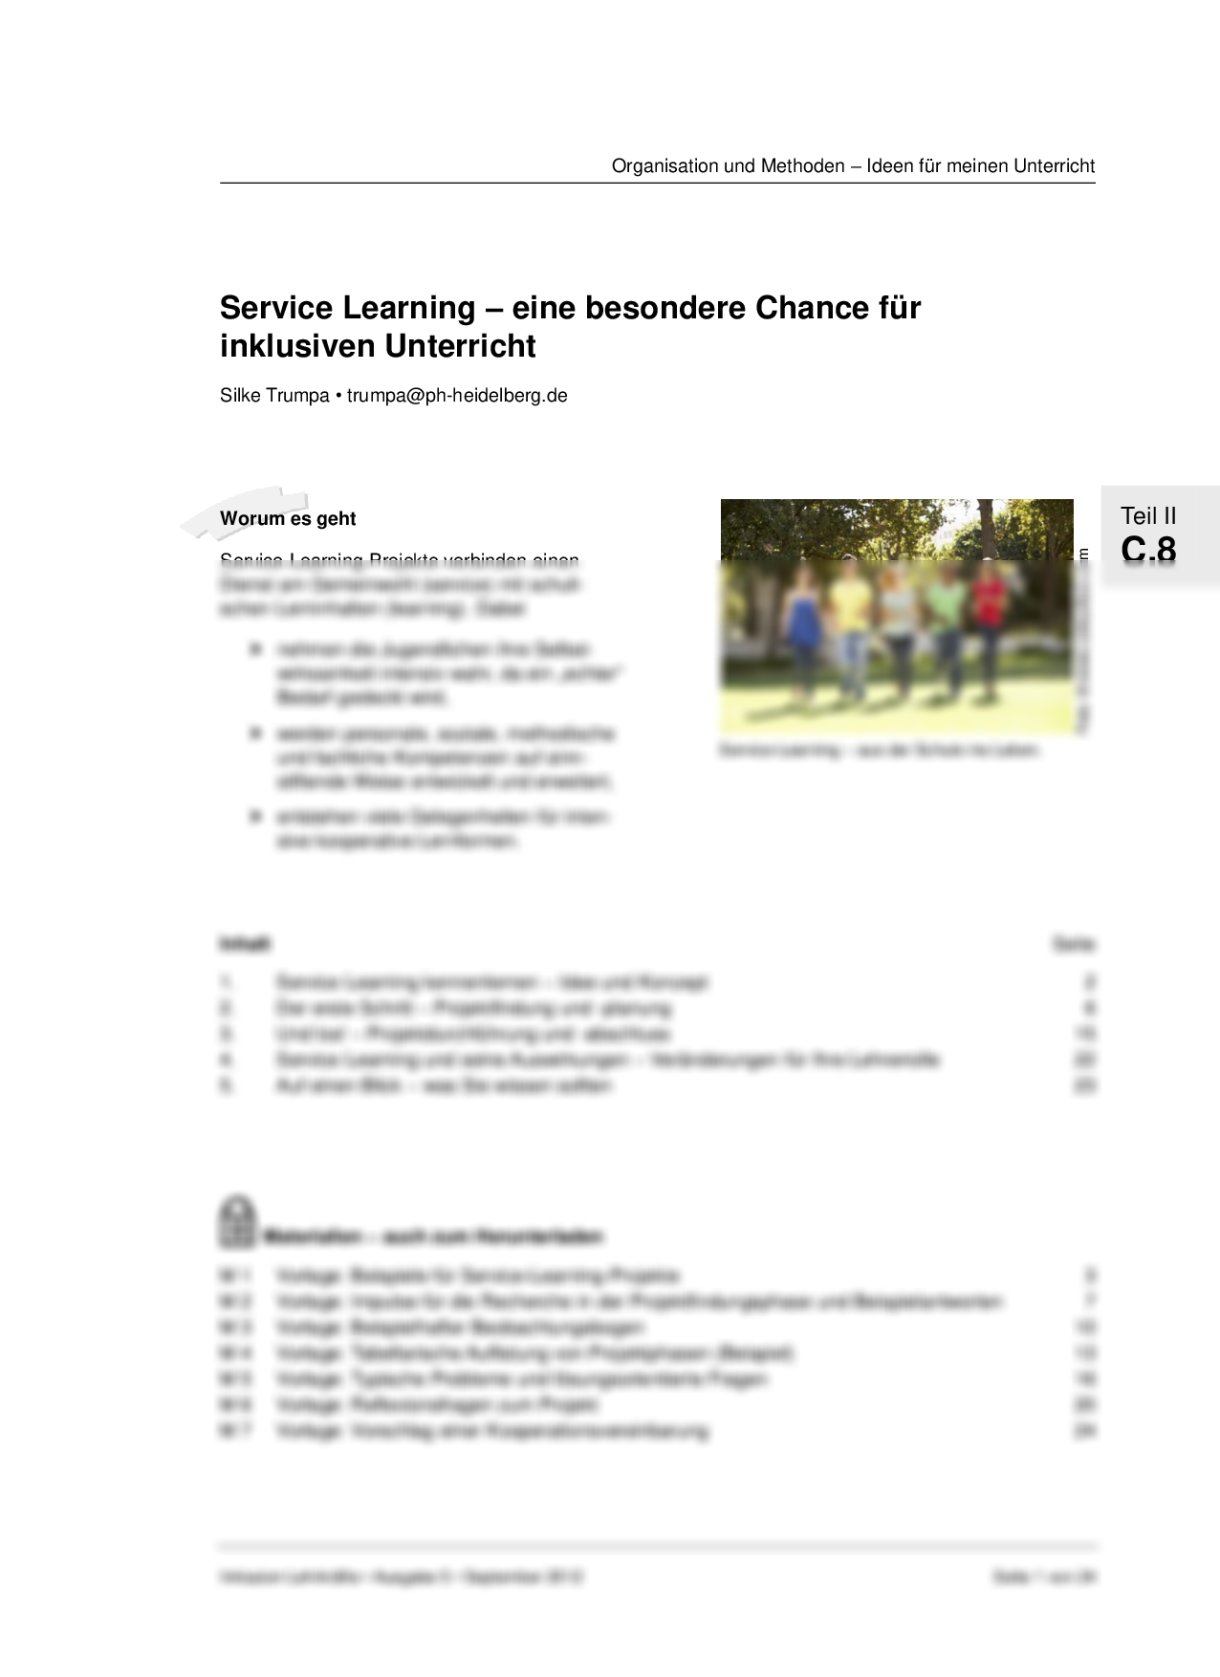 Service Learning – eine besondere Chance für inklusiven Unterricht - Seite 1